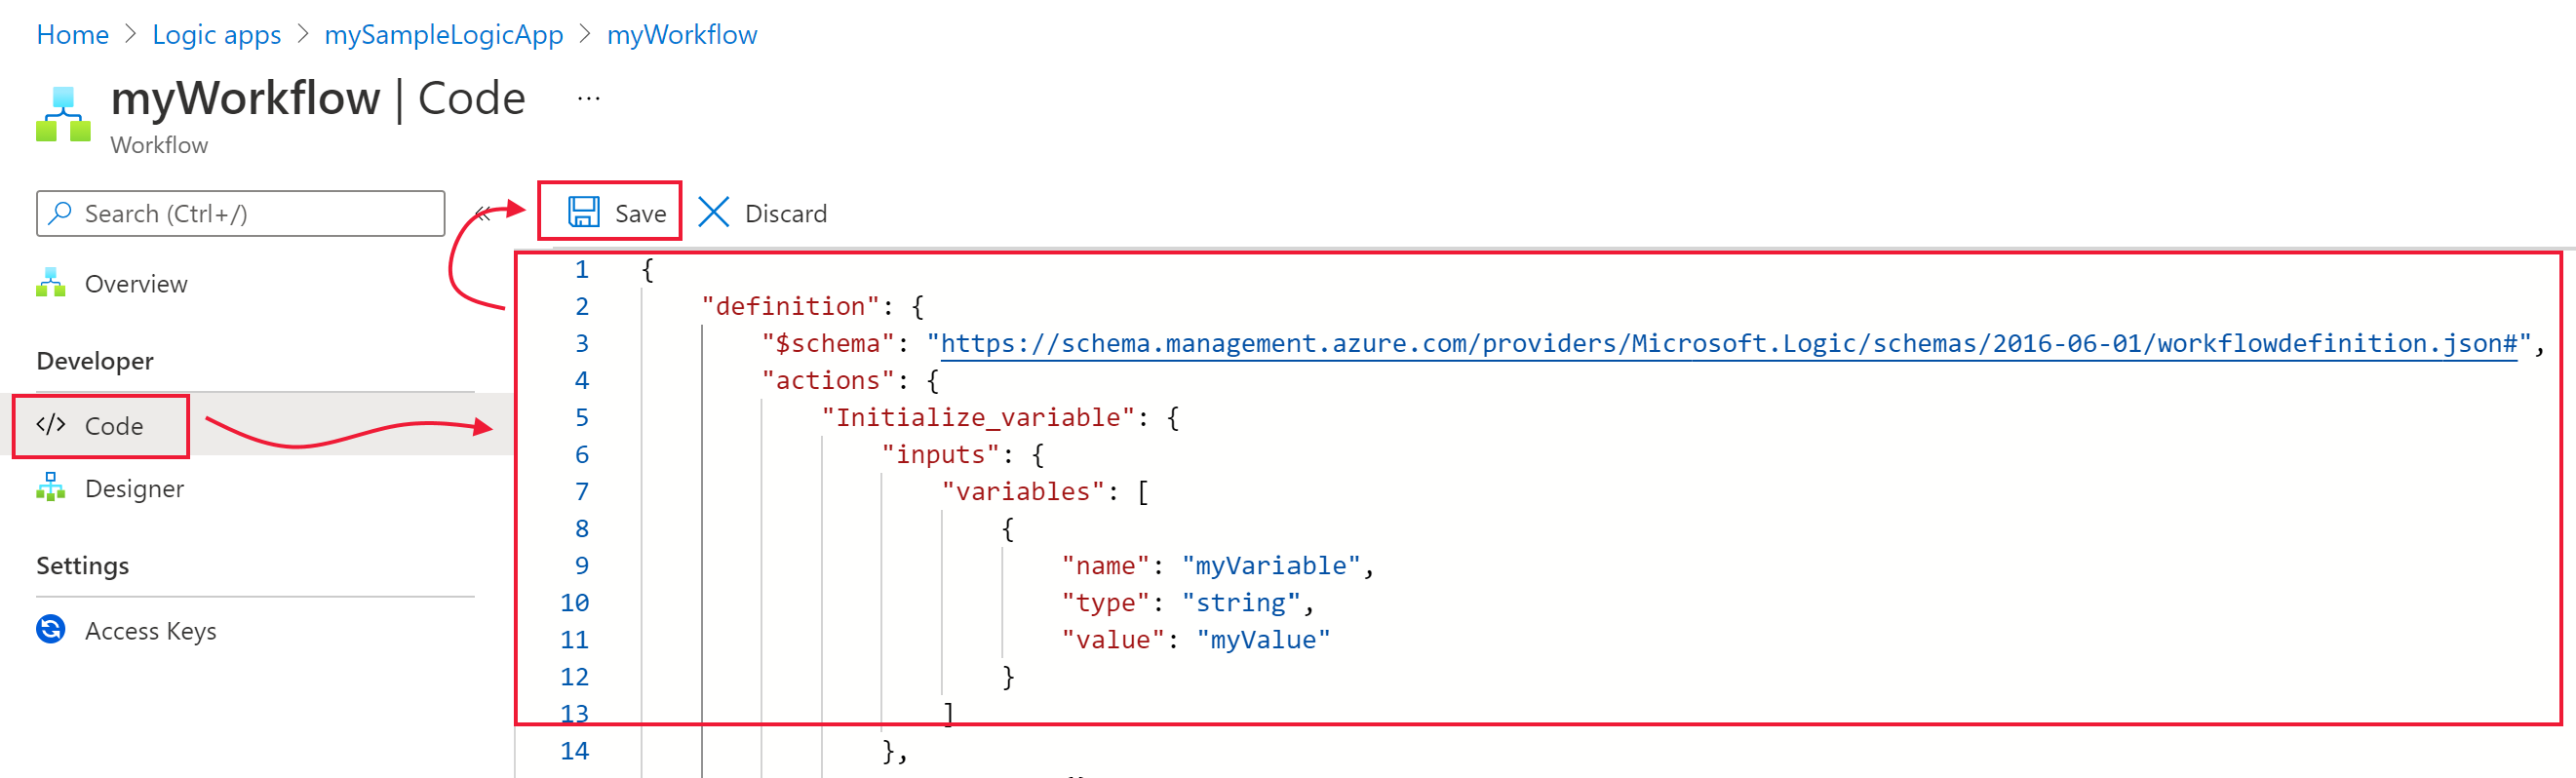 Captura de pantalla de un flujo de trabajo de Logic Apps en la vista Código, en la que se muestra la definición de flujo de trabajo JSON que se está editando en Azure Portal.